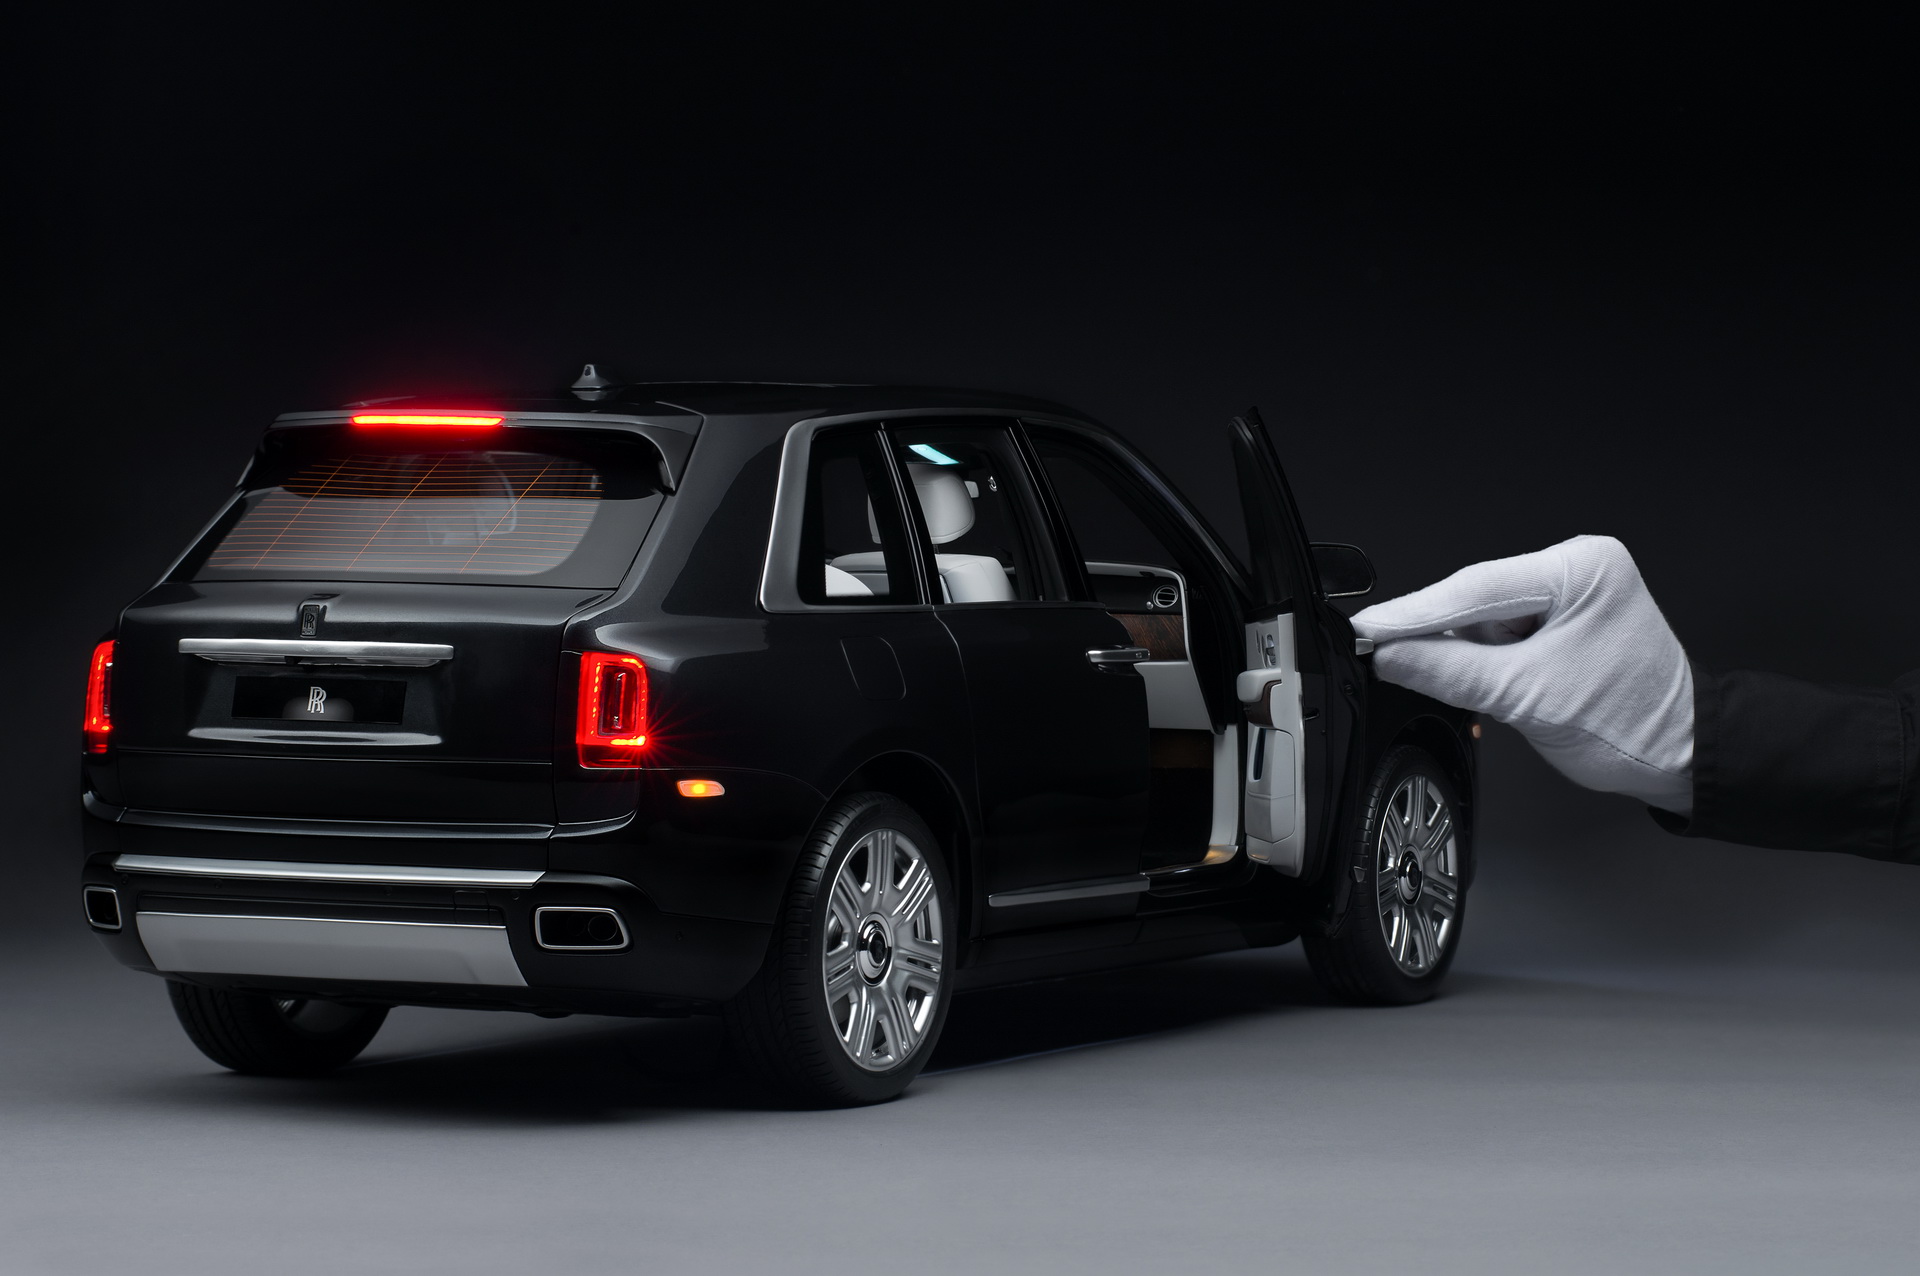 Siêu SUV Rolls-Royce Cullian tung bản thu gọn tỉ lệ 1:8 giống y như thật